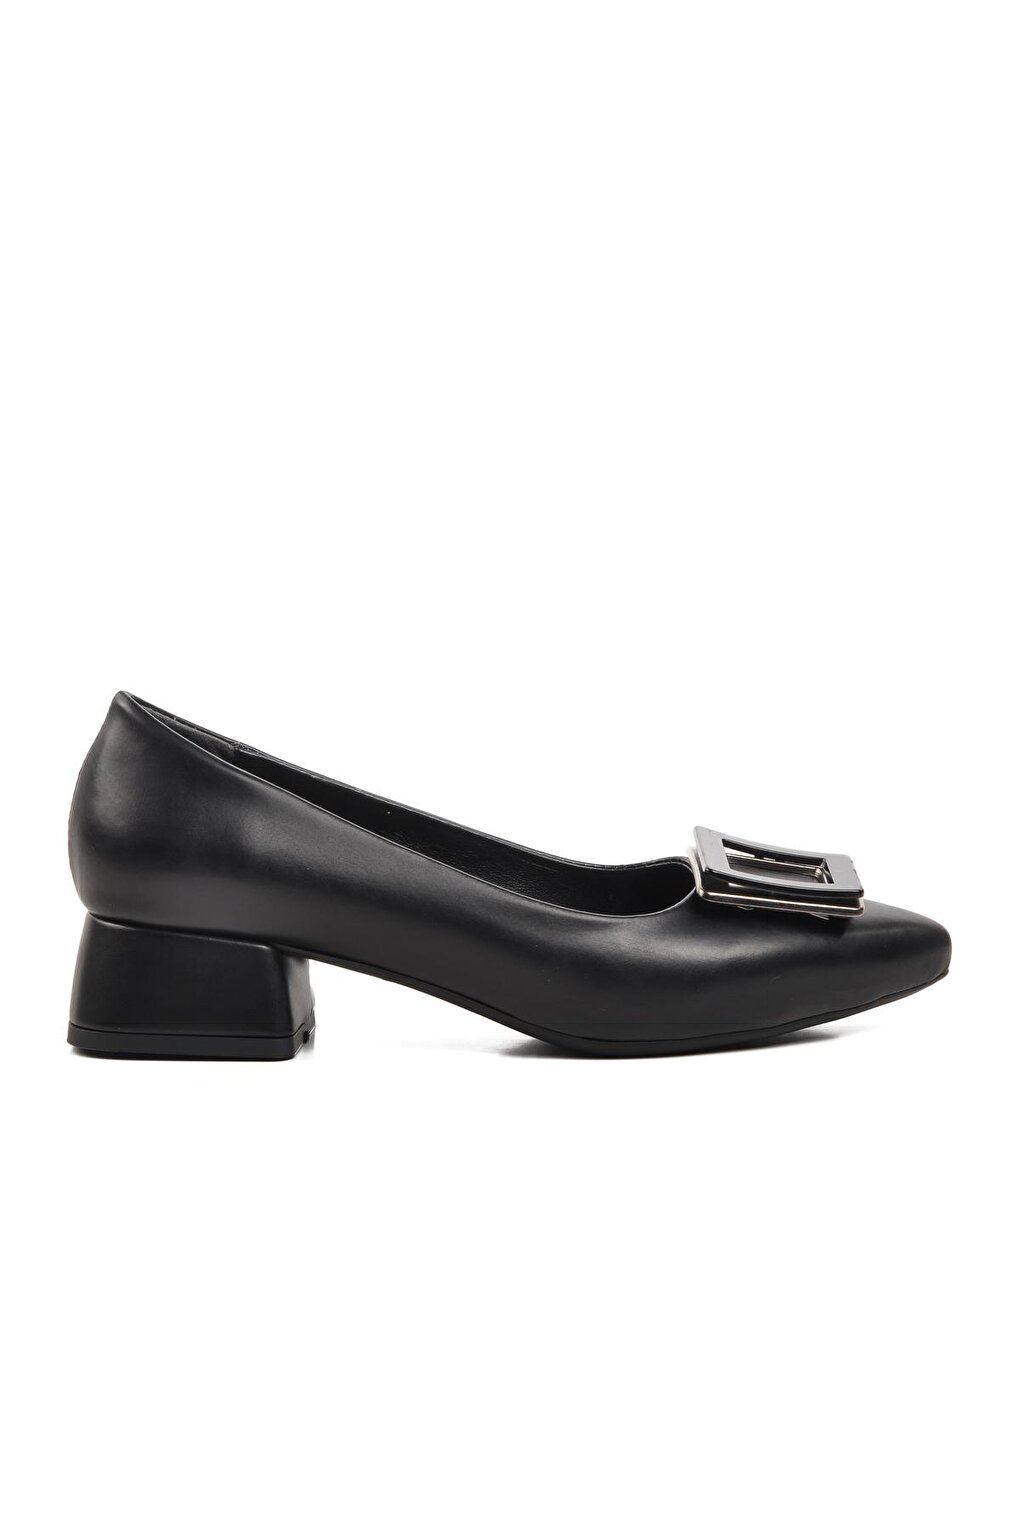 289216 Черные женские туфли на каблуке Ayakmod цена и фото